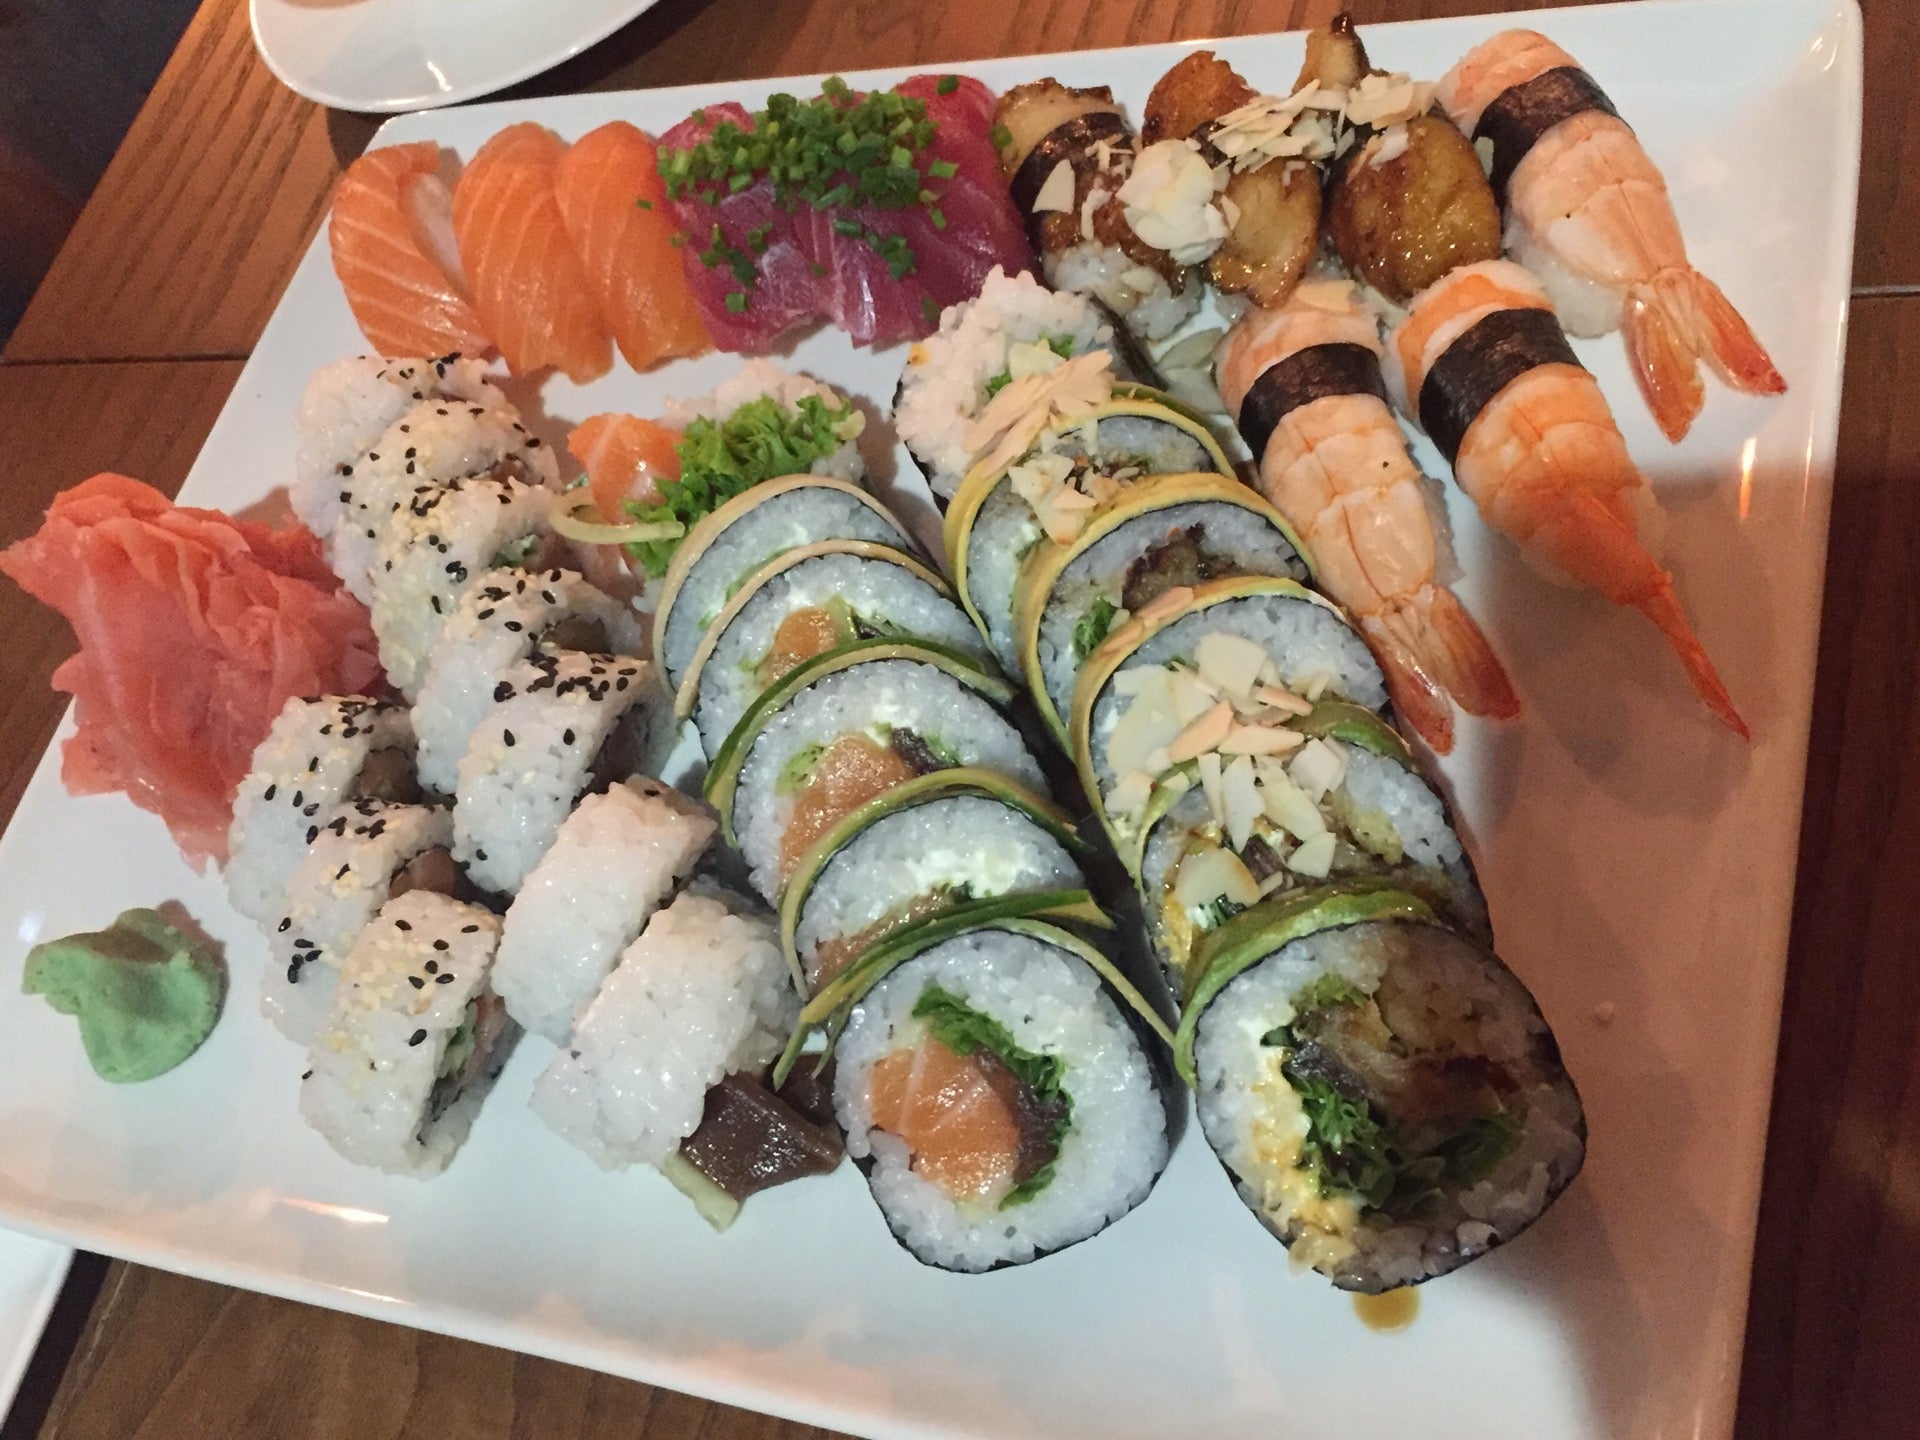 NAMA sushi bar & lounge